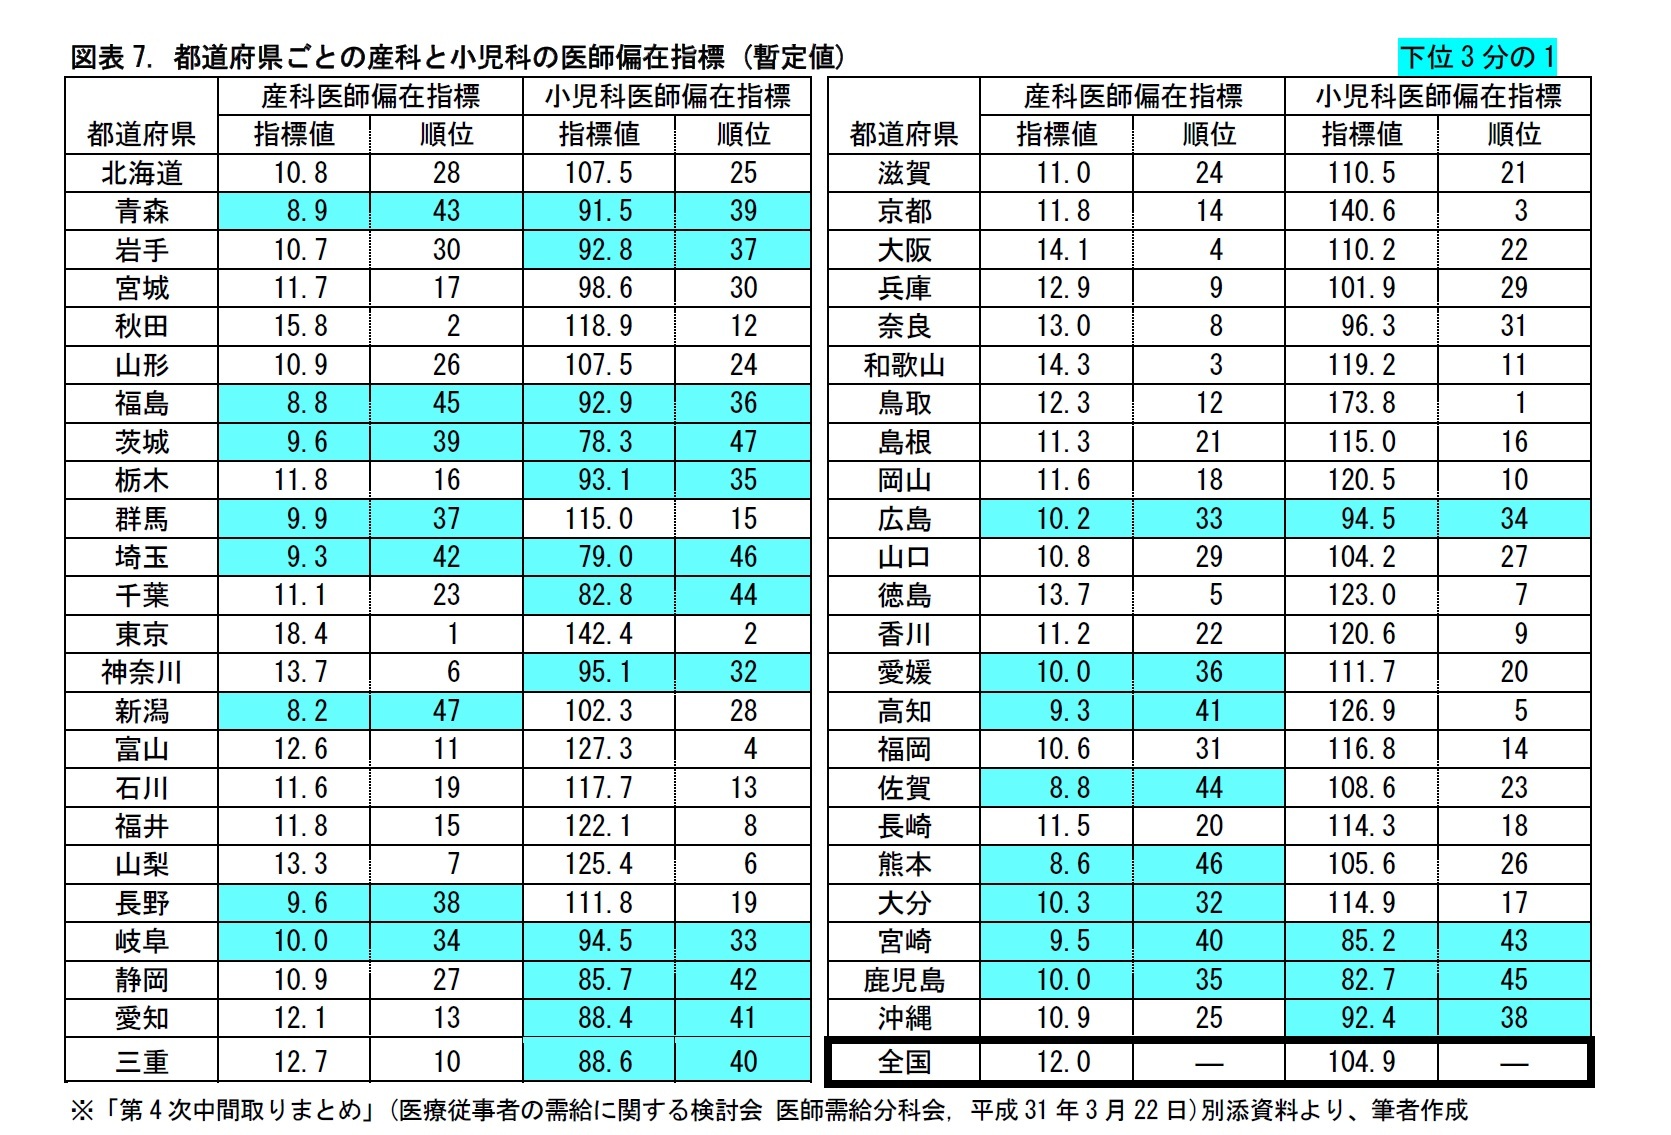 図表7. 都道府県ごとの産科と小児科の医師偏在指標 (暫定値)